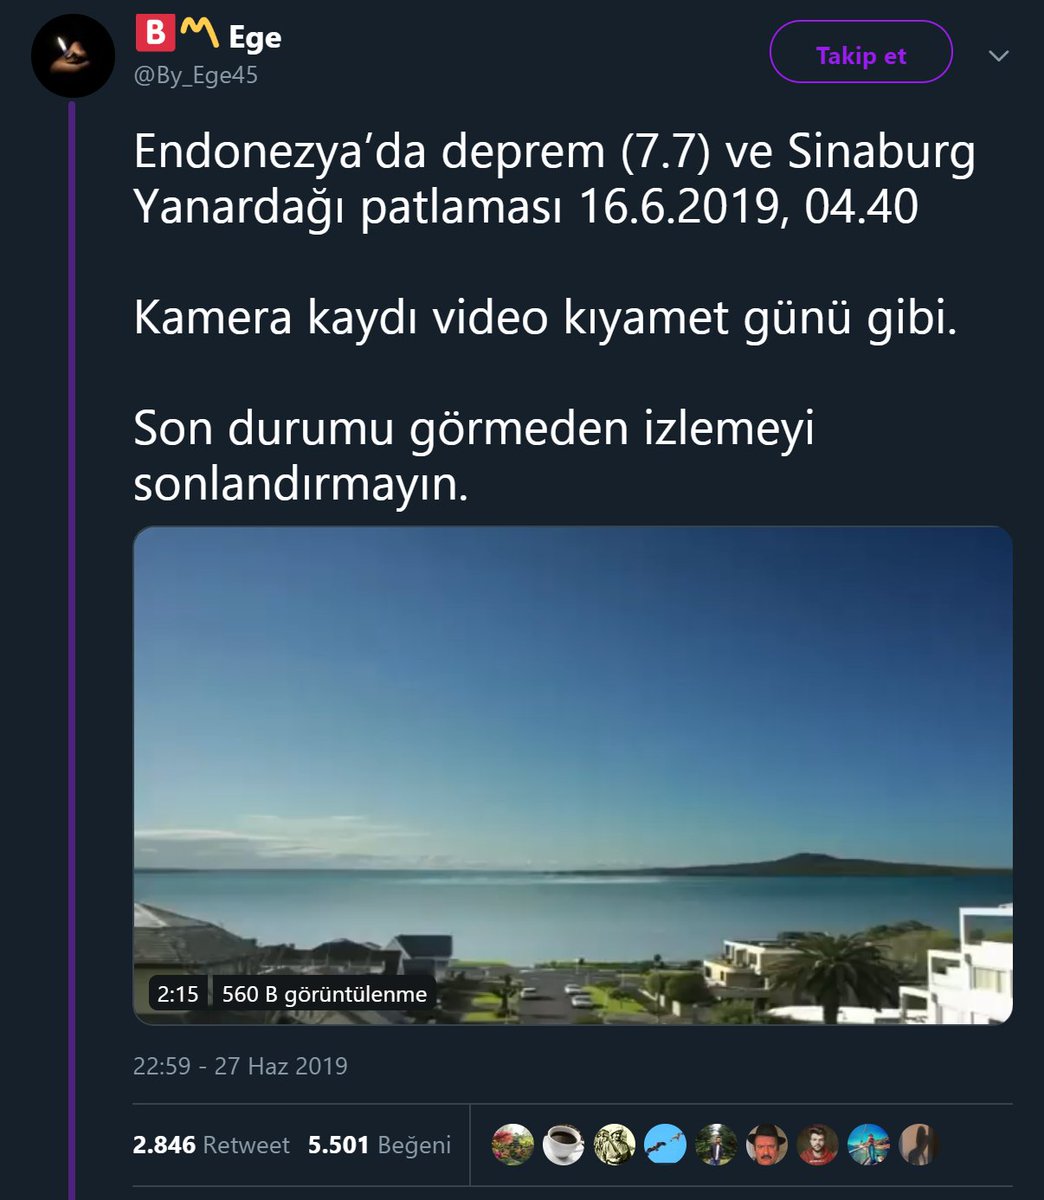 Sinabung Yanardağı'nın patlama anına ait olduğu sanılan videoyu paylaşan tweet